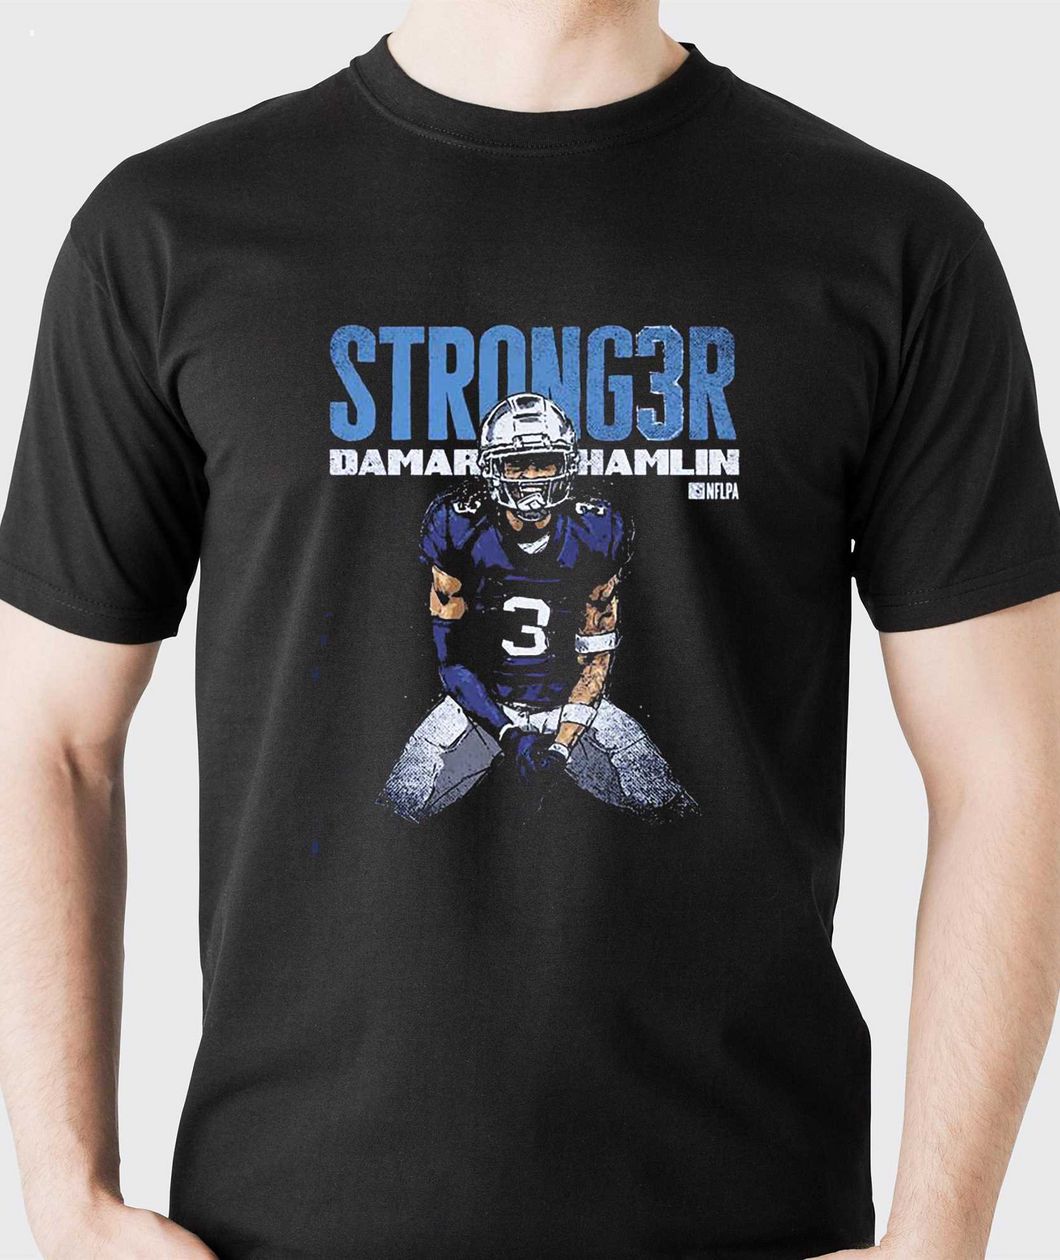 Damar-Hamlin-Buffalo-Bills-Stronger-T-Shirt_1